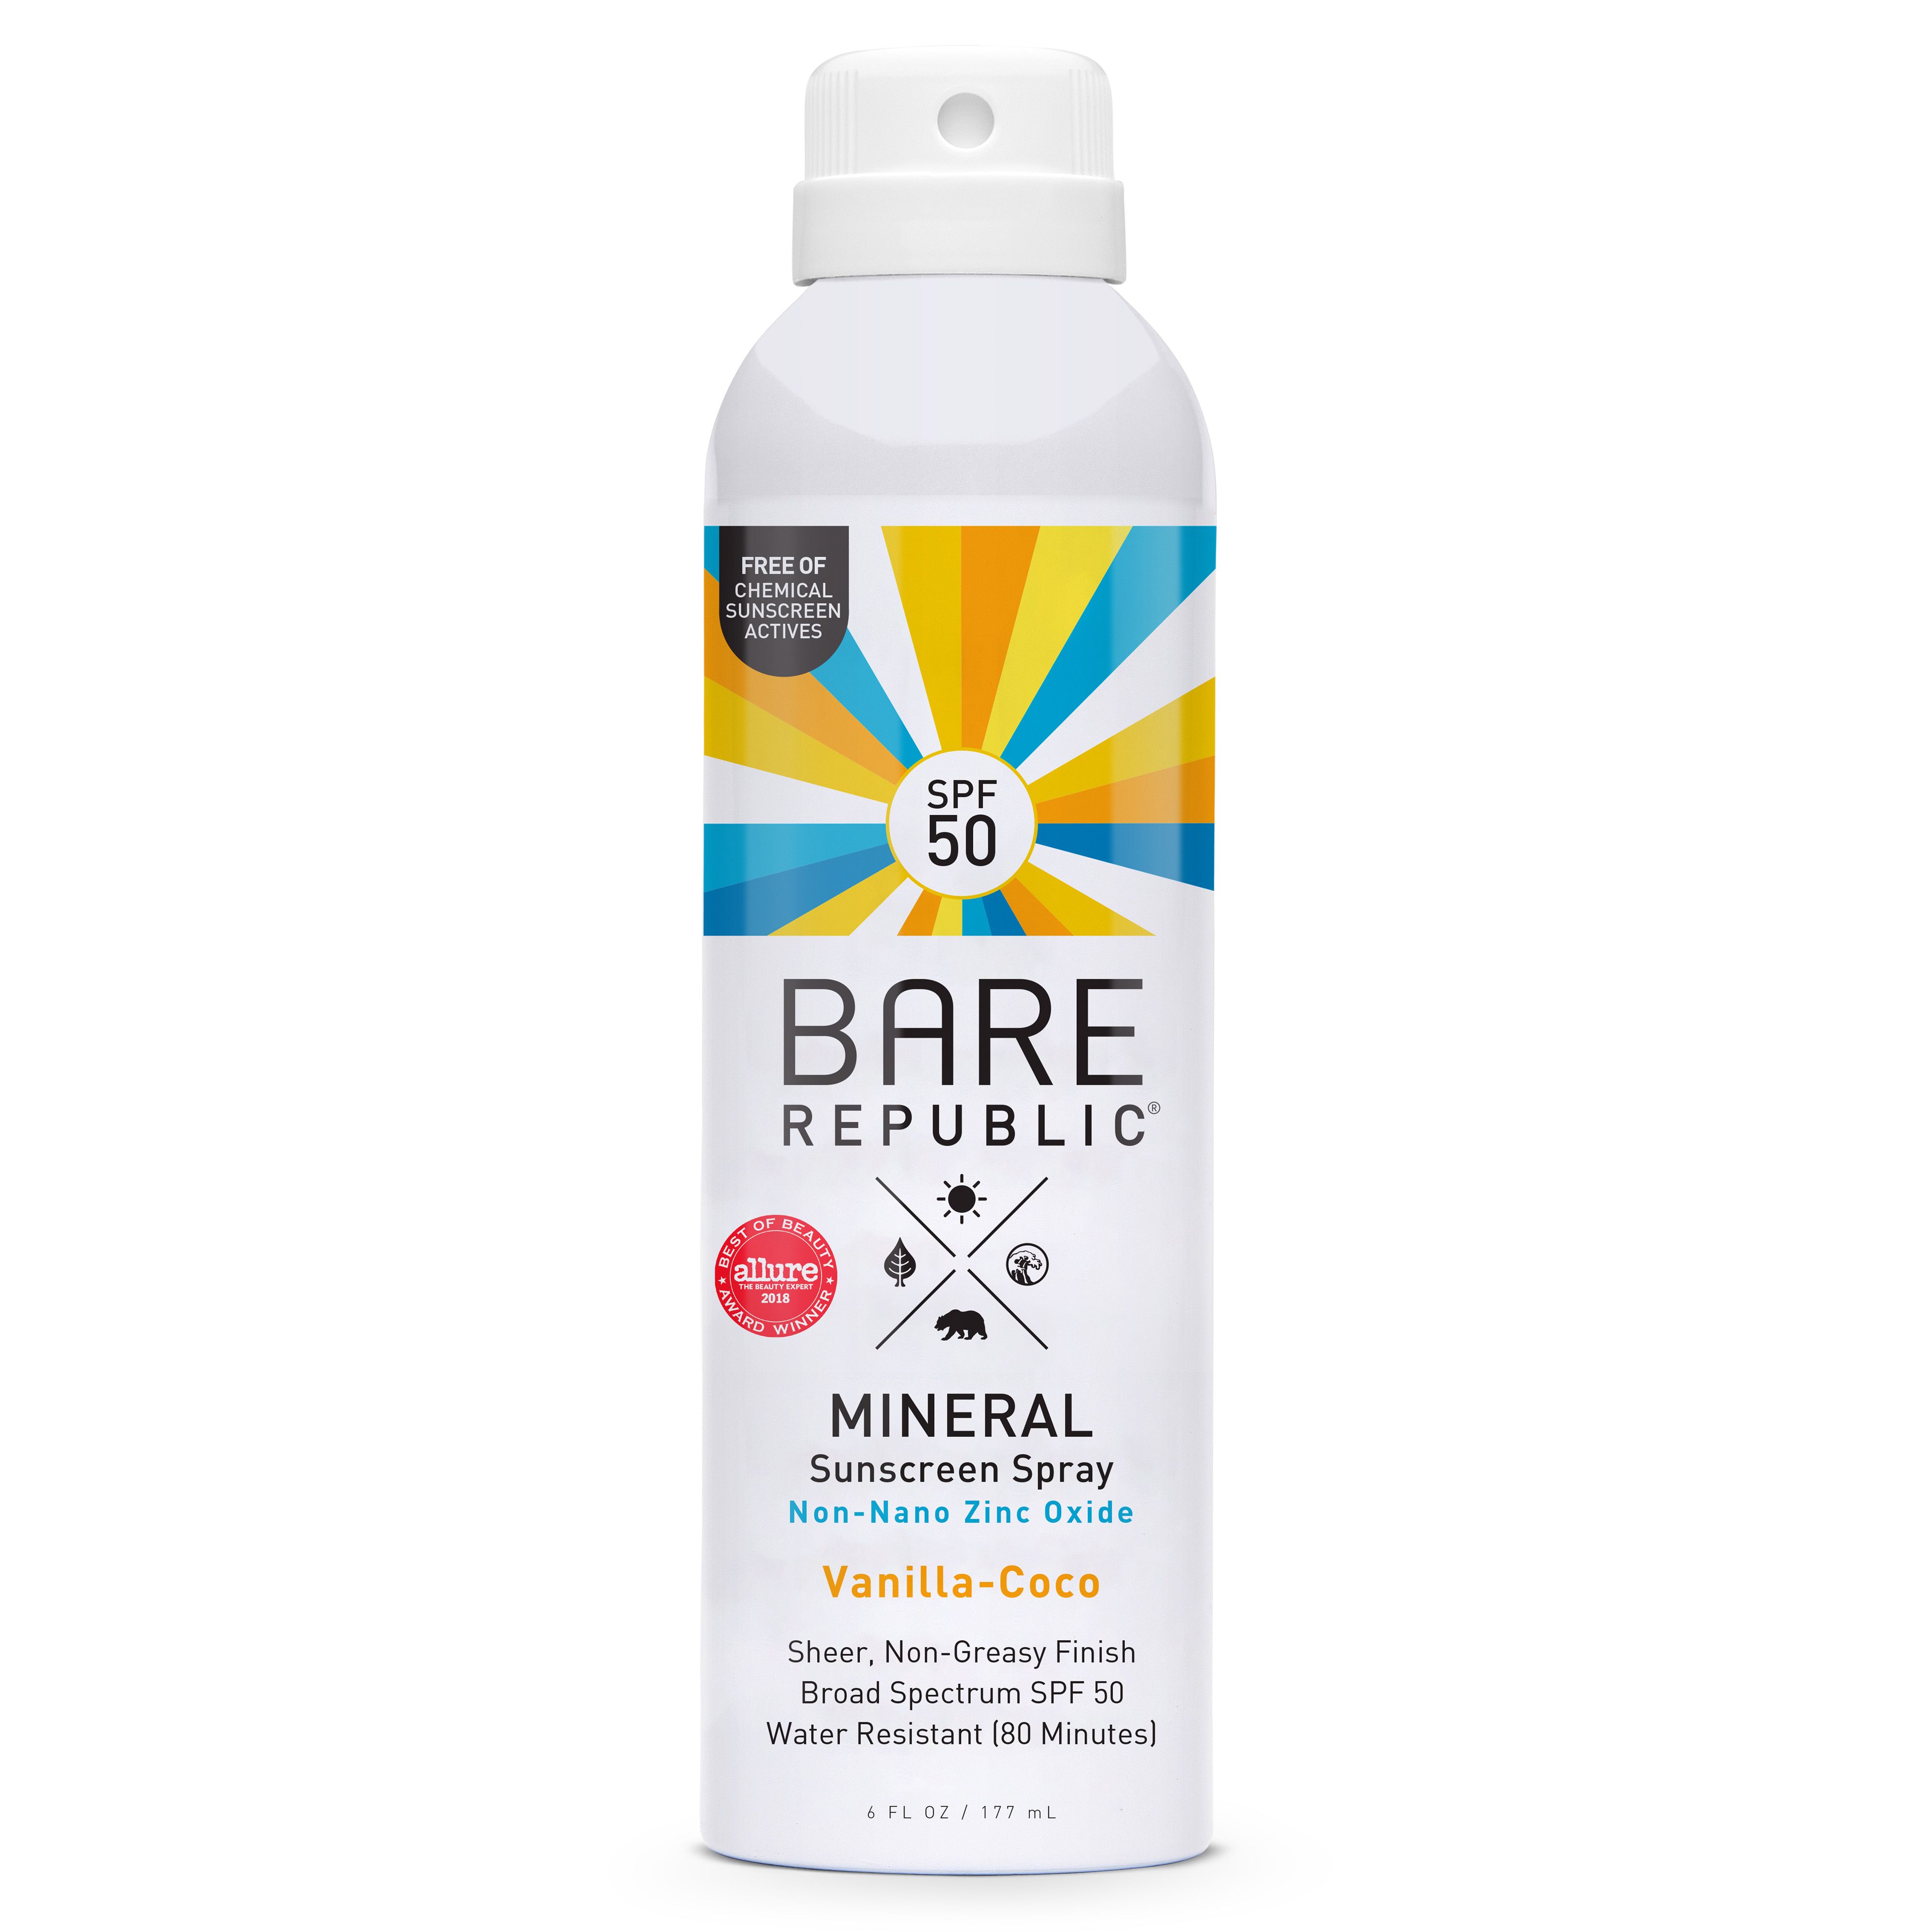 Bare Republic Mineral Sunscreen Spray, Vanilla-Coco, SPF 50 - 6 fl oz